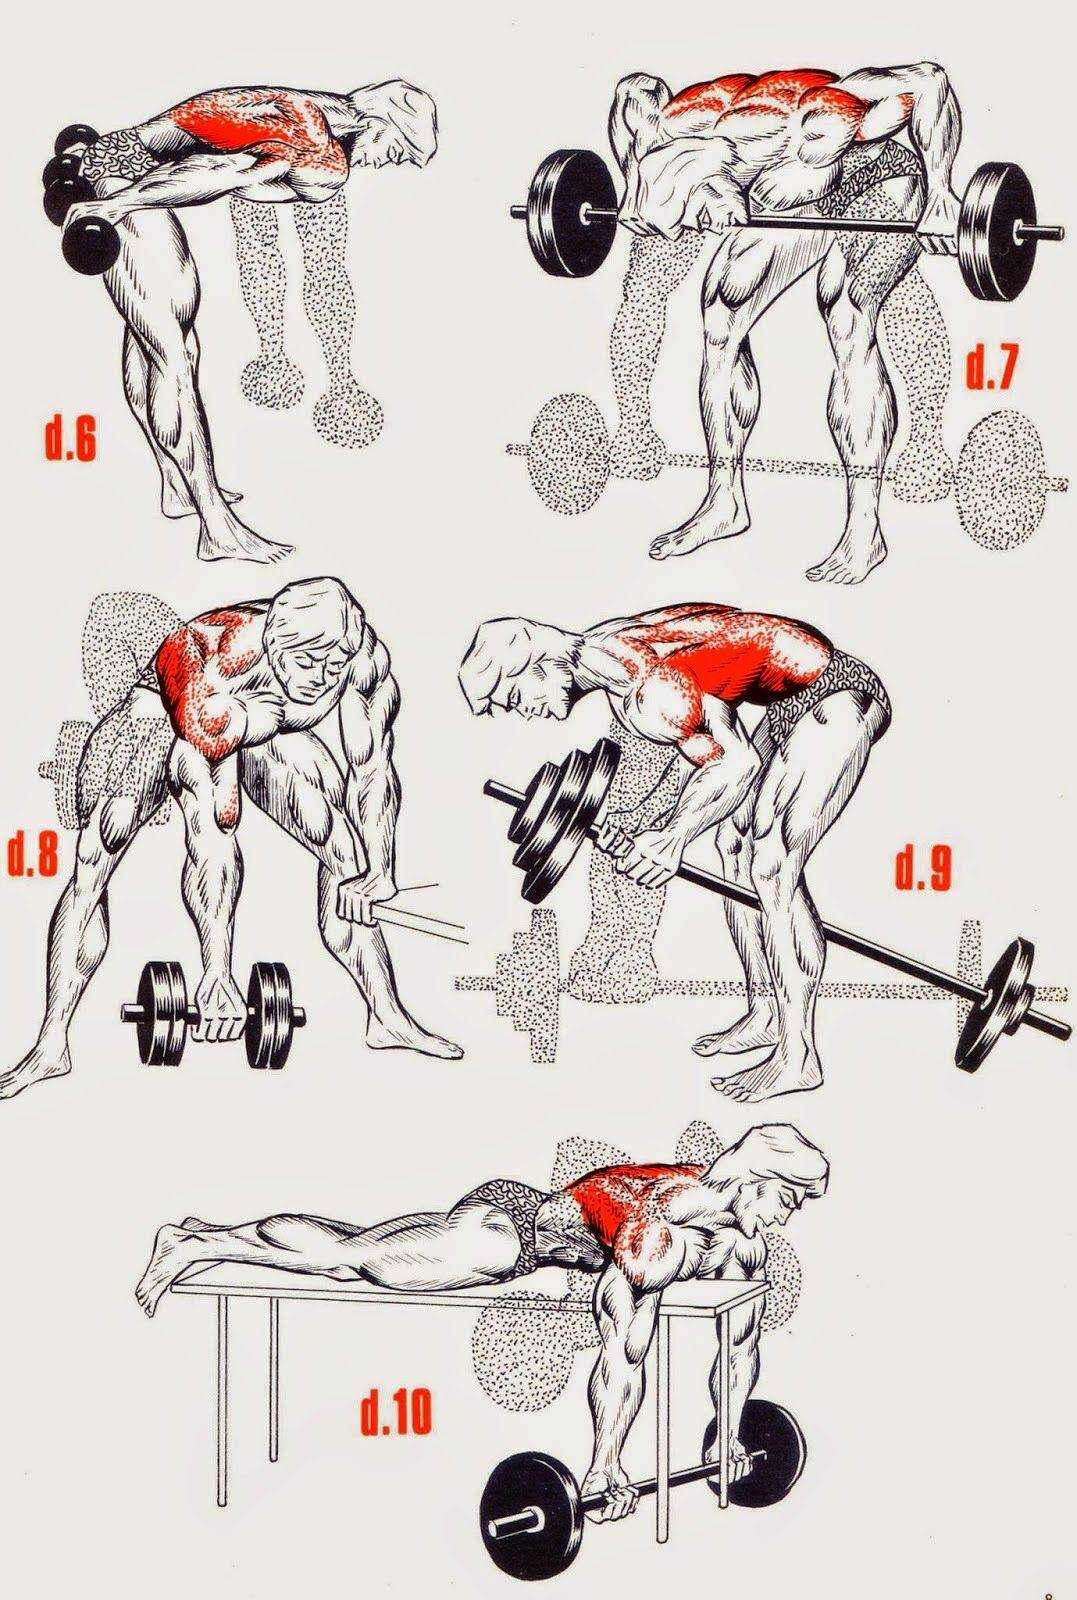 Тренировка мышц спины с гантелями: основные упражнения, принципы и особенности | rulebody.ru — правила тела